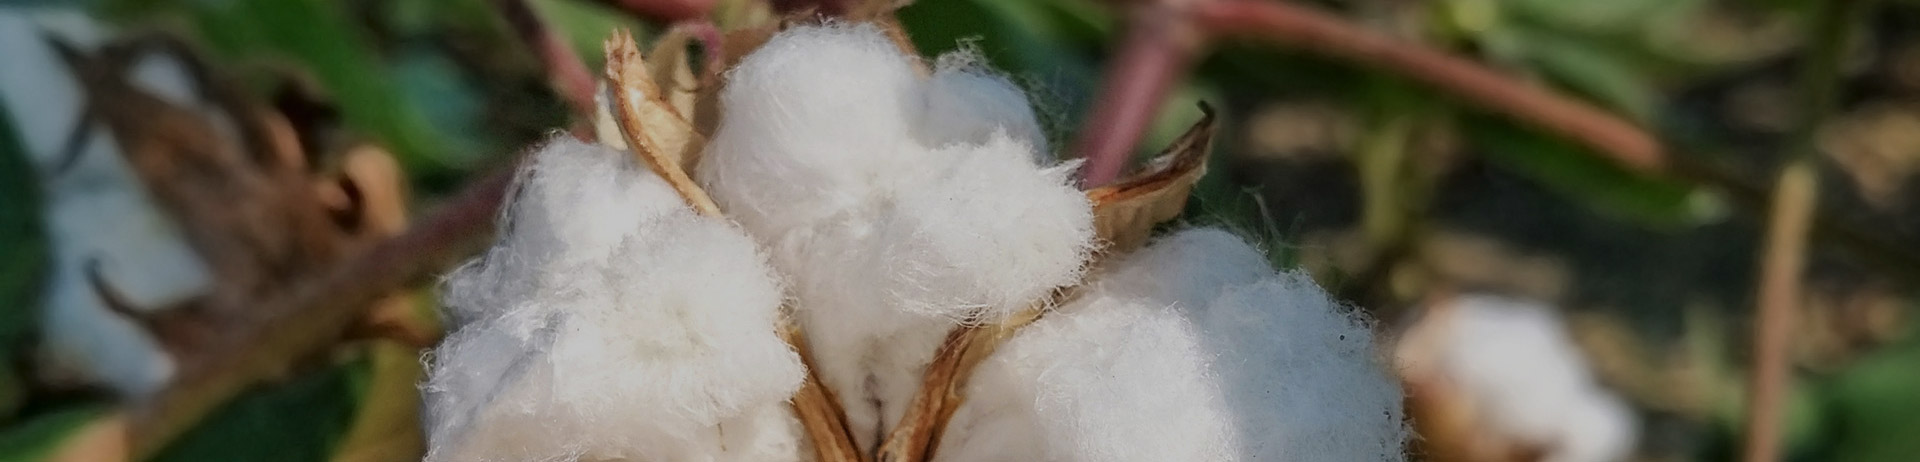 La era del algodón的技术